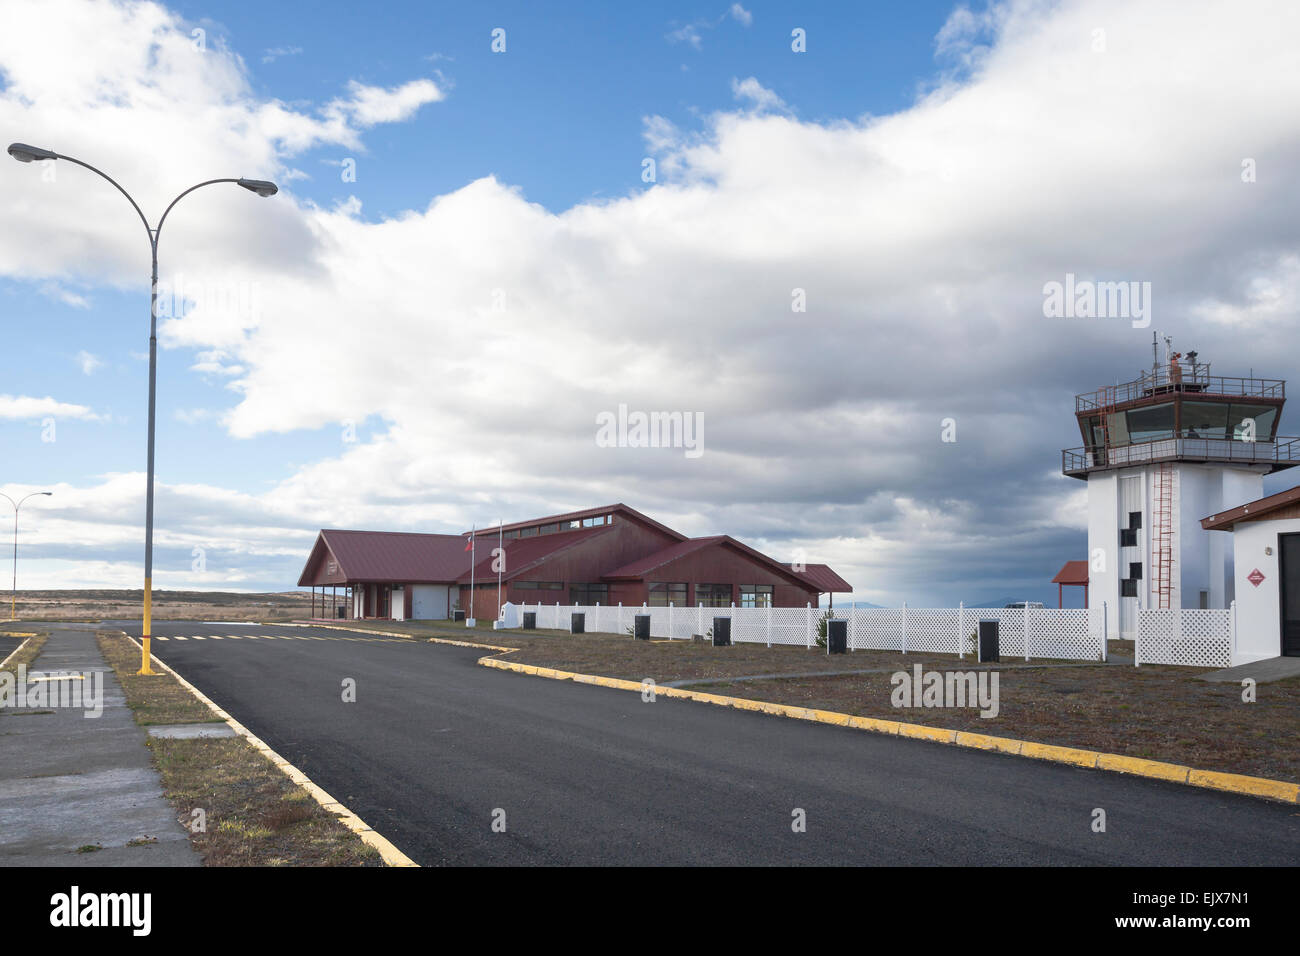 Aeropuerto puerto natales fotografías e imágenes de alta resolución - Alamy